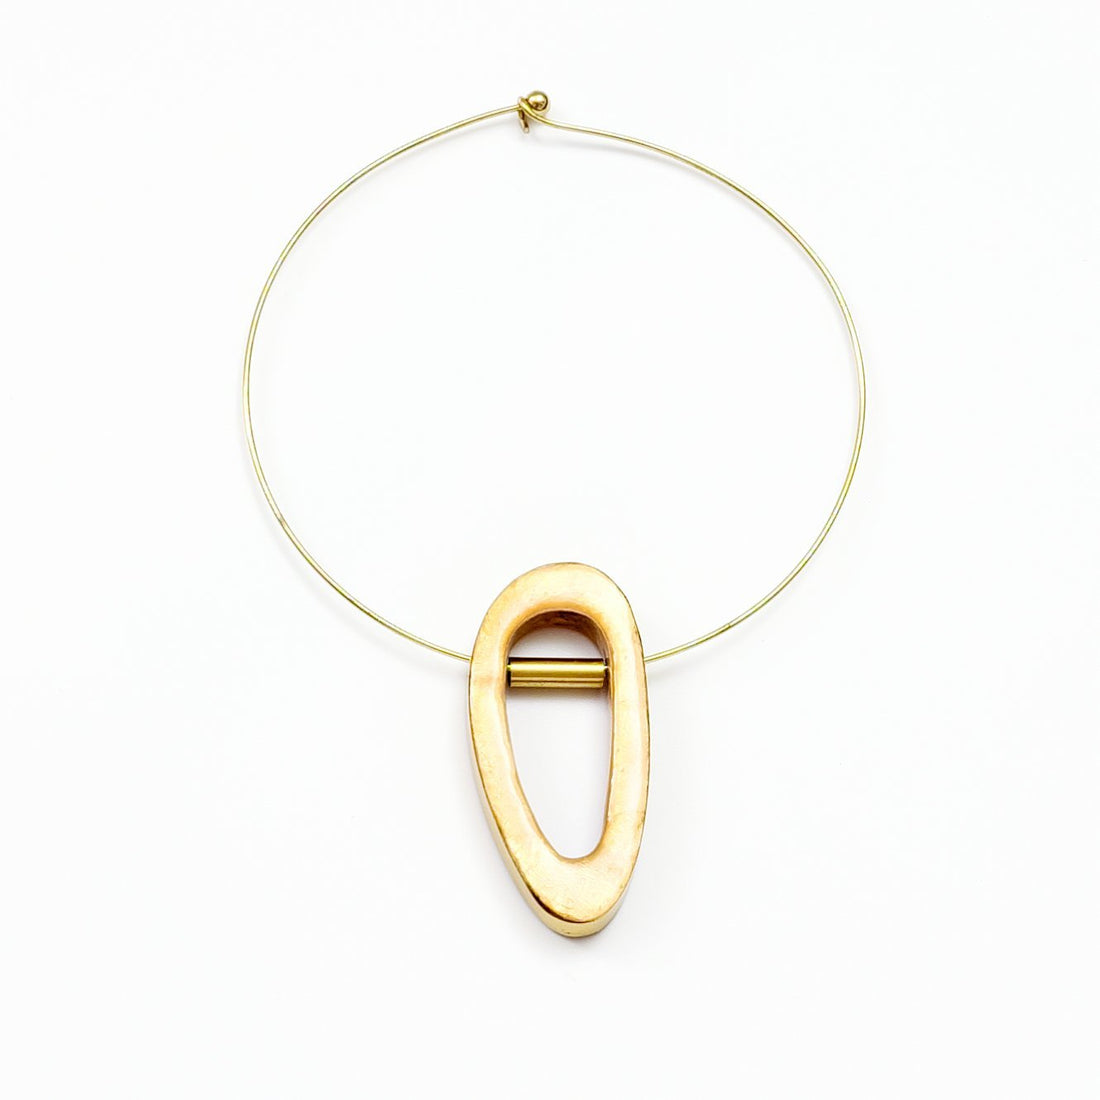 Jewelry - Capiz Shell Necklace - Orbita Brass Choker | LIKHÂ - LIKHÂ